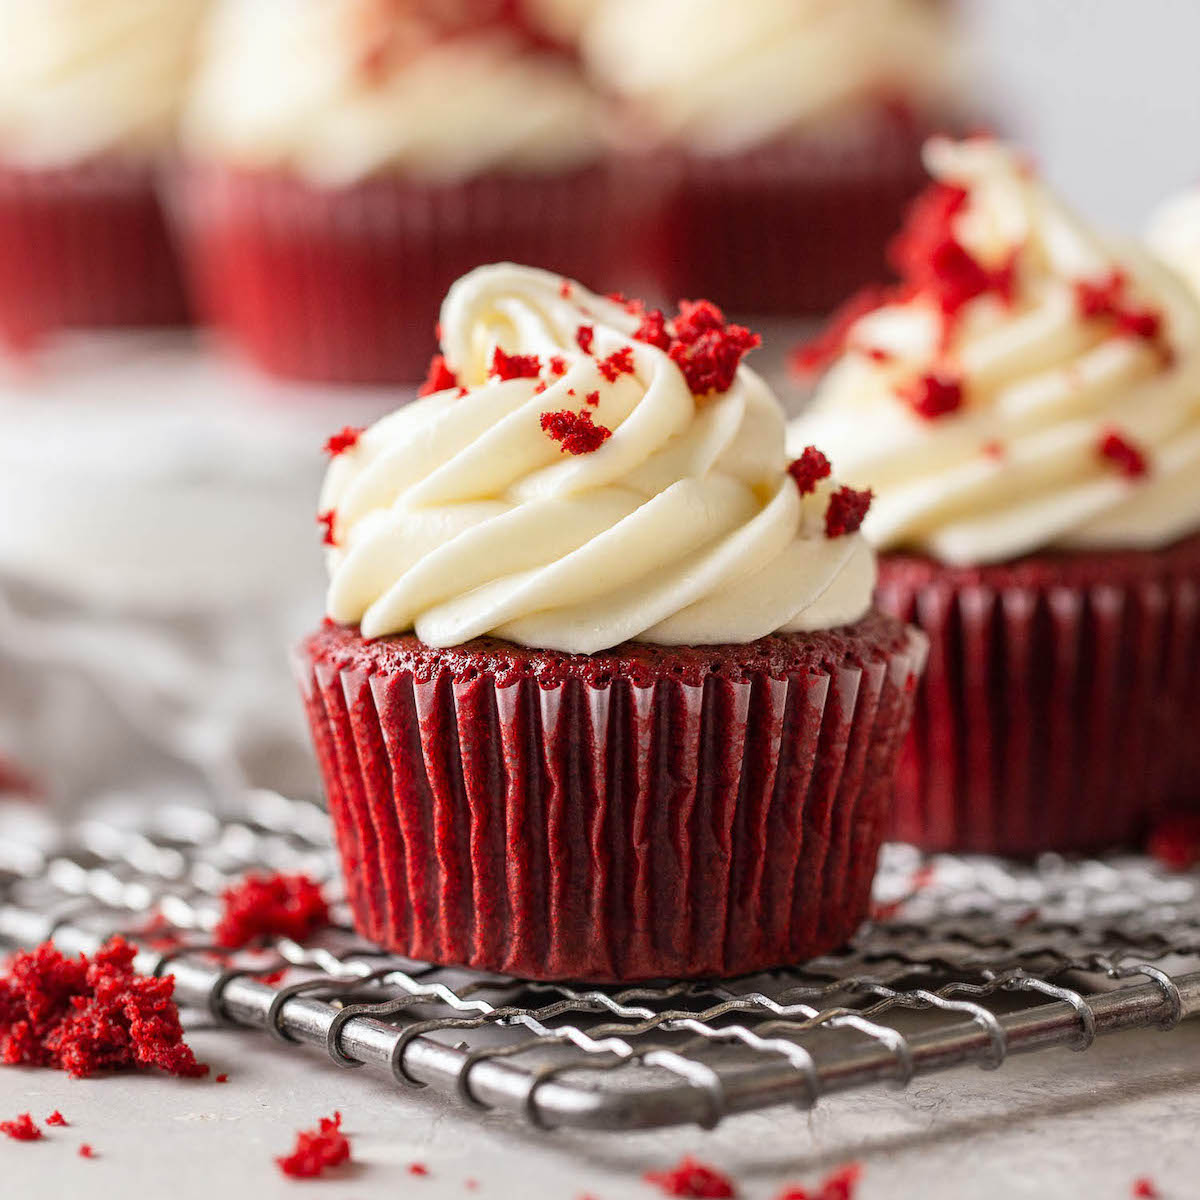 Red Velvet Cupcakes - Live Well Bake Often